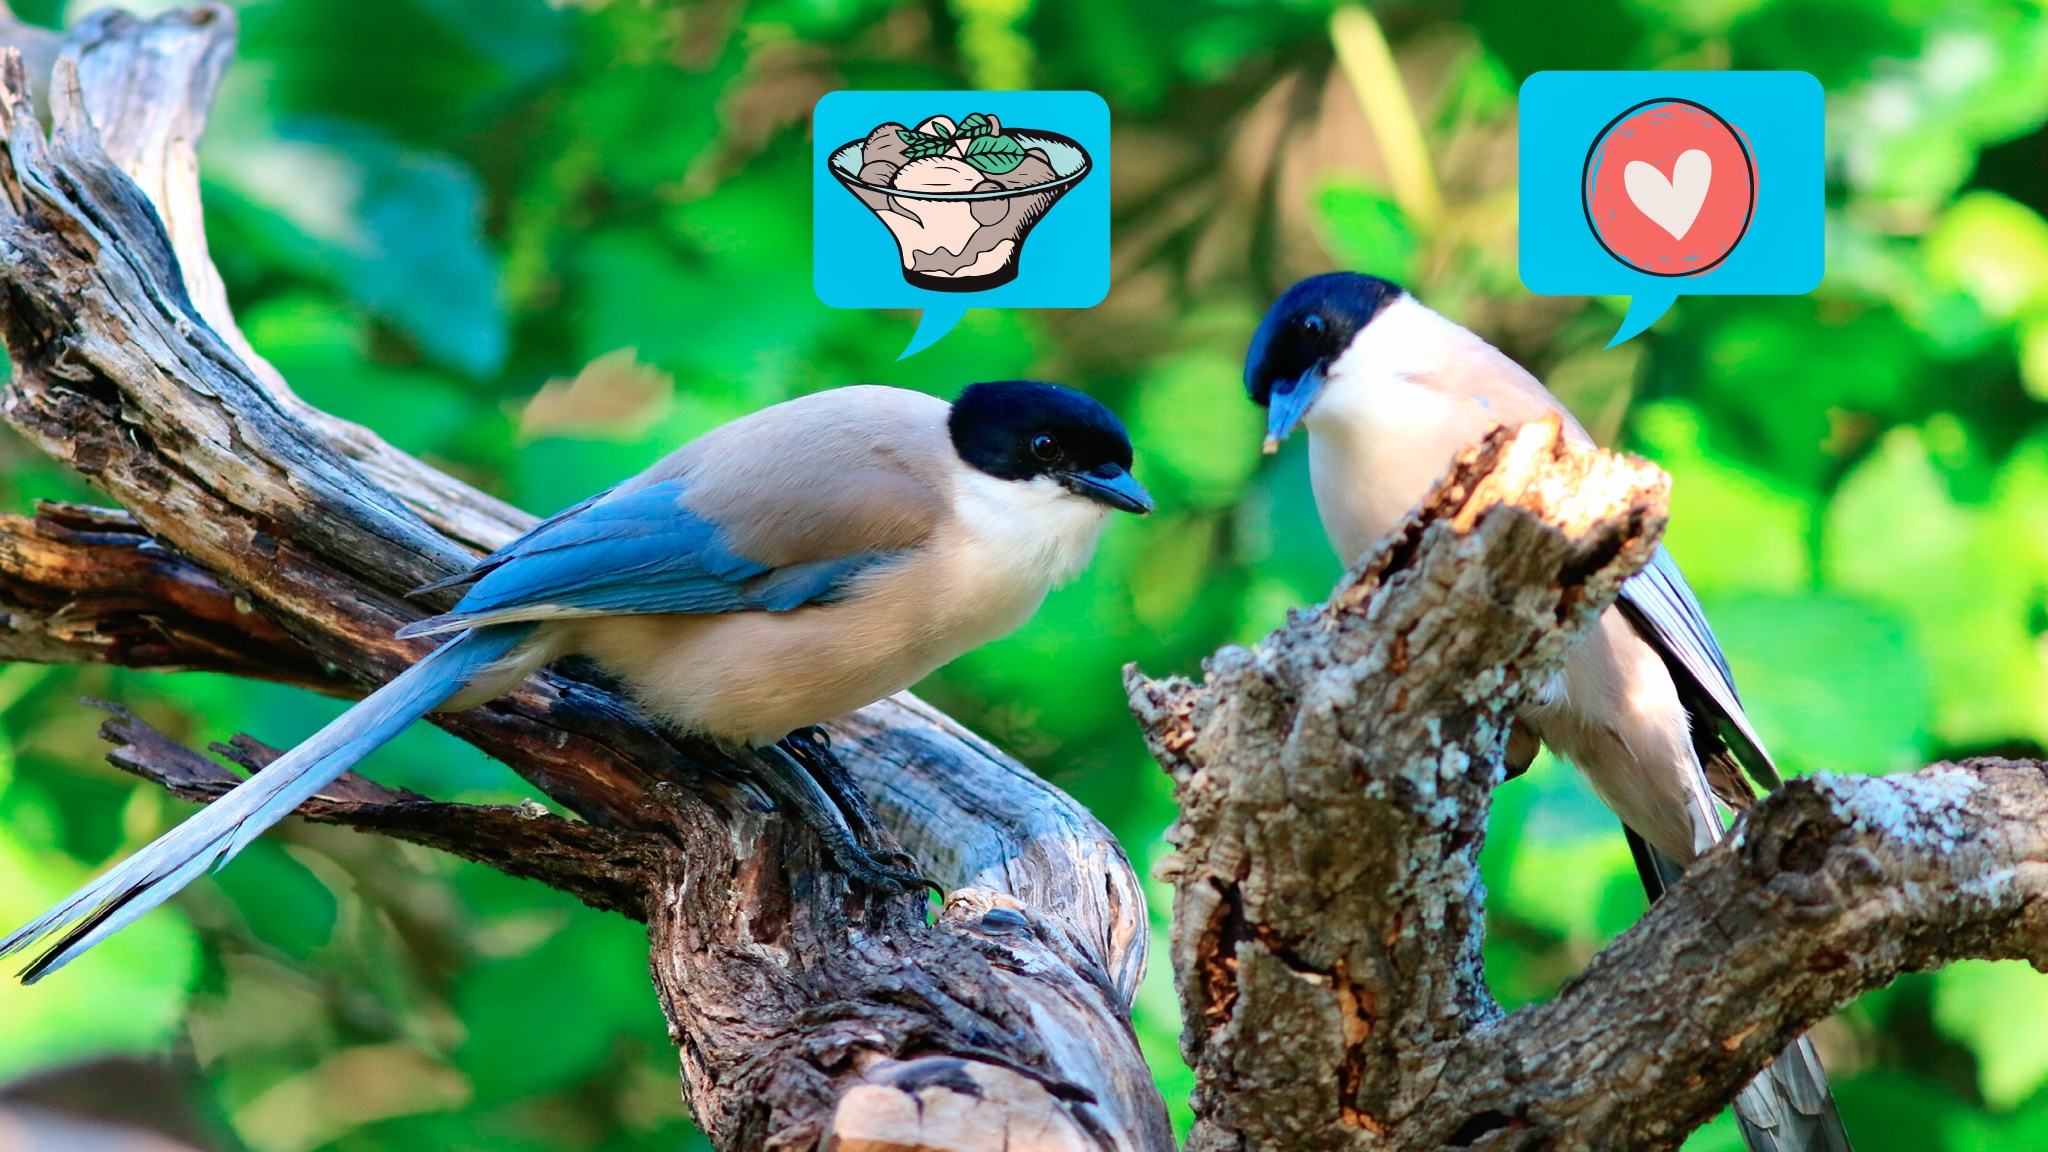 A madarak is képesek az empátiára, és megosztják az ennivalójukat az éhes társaikkal